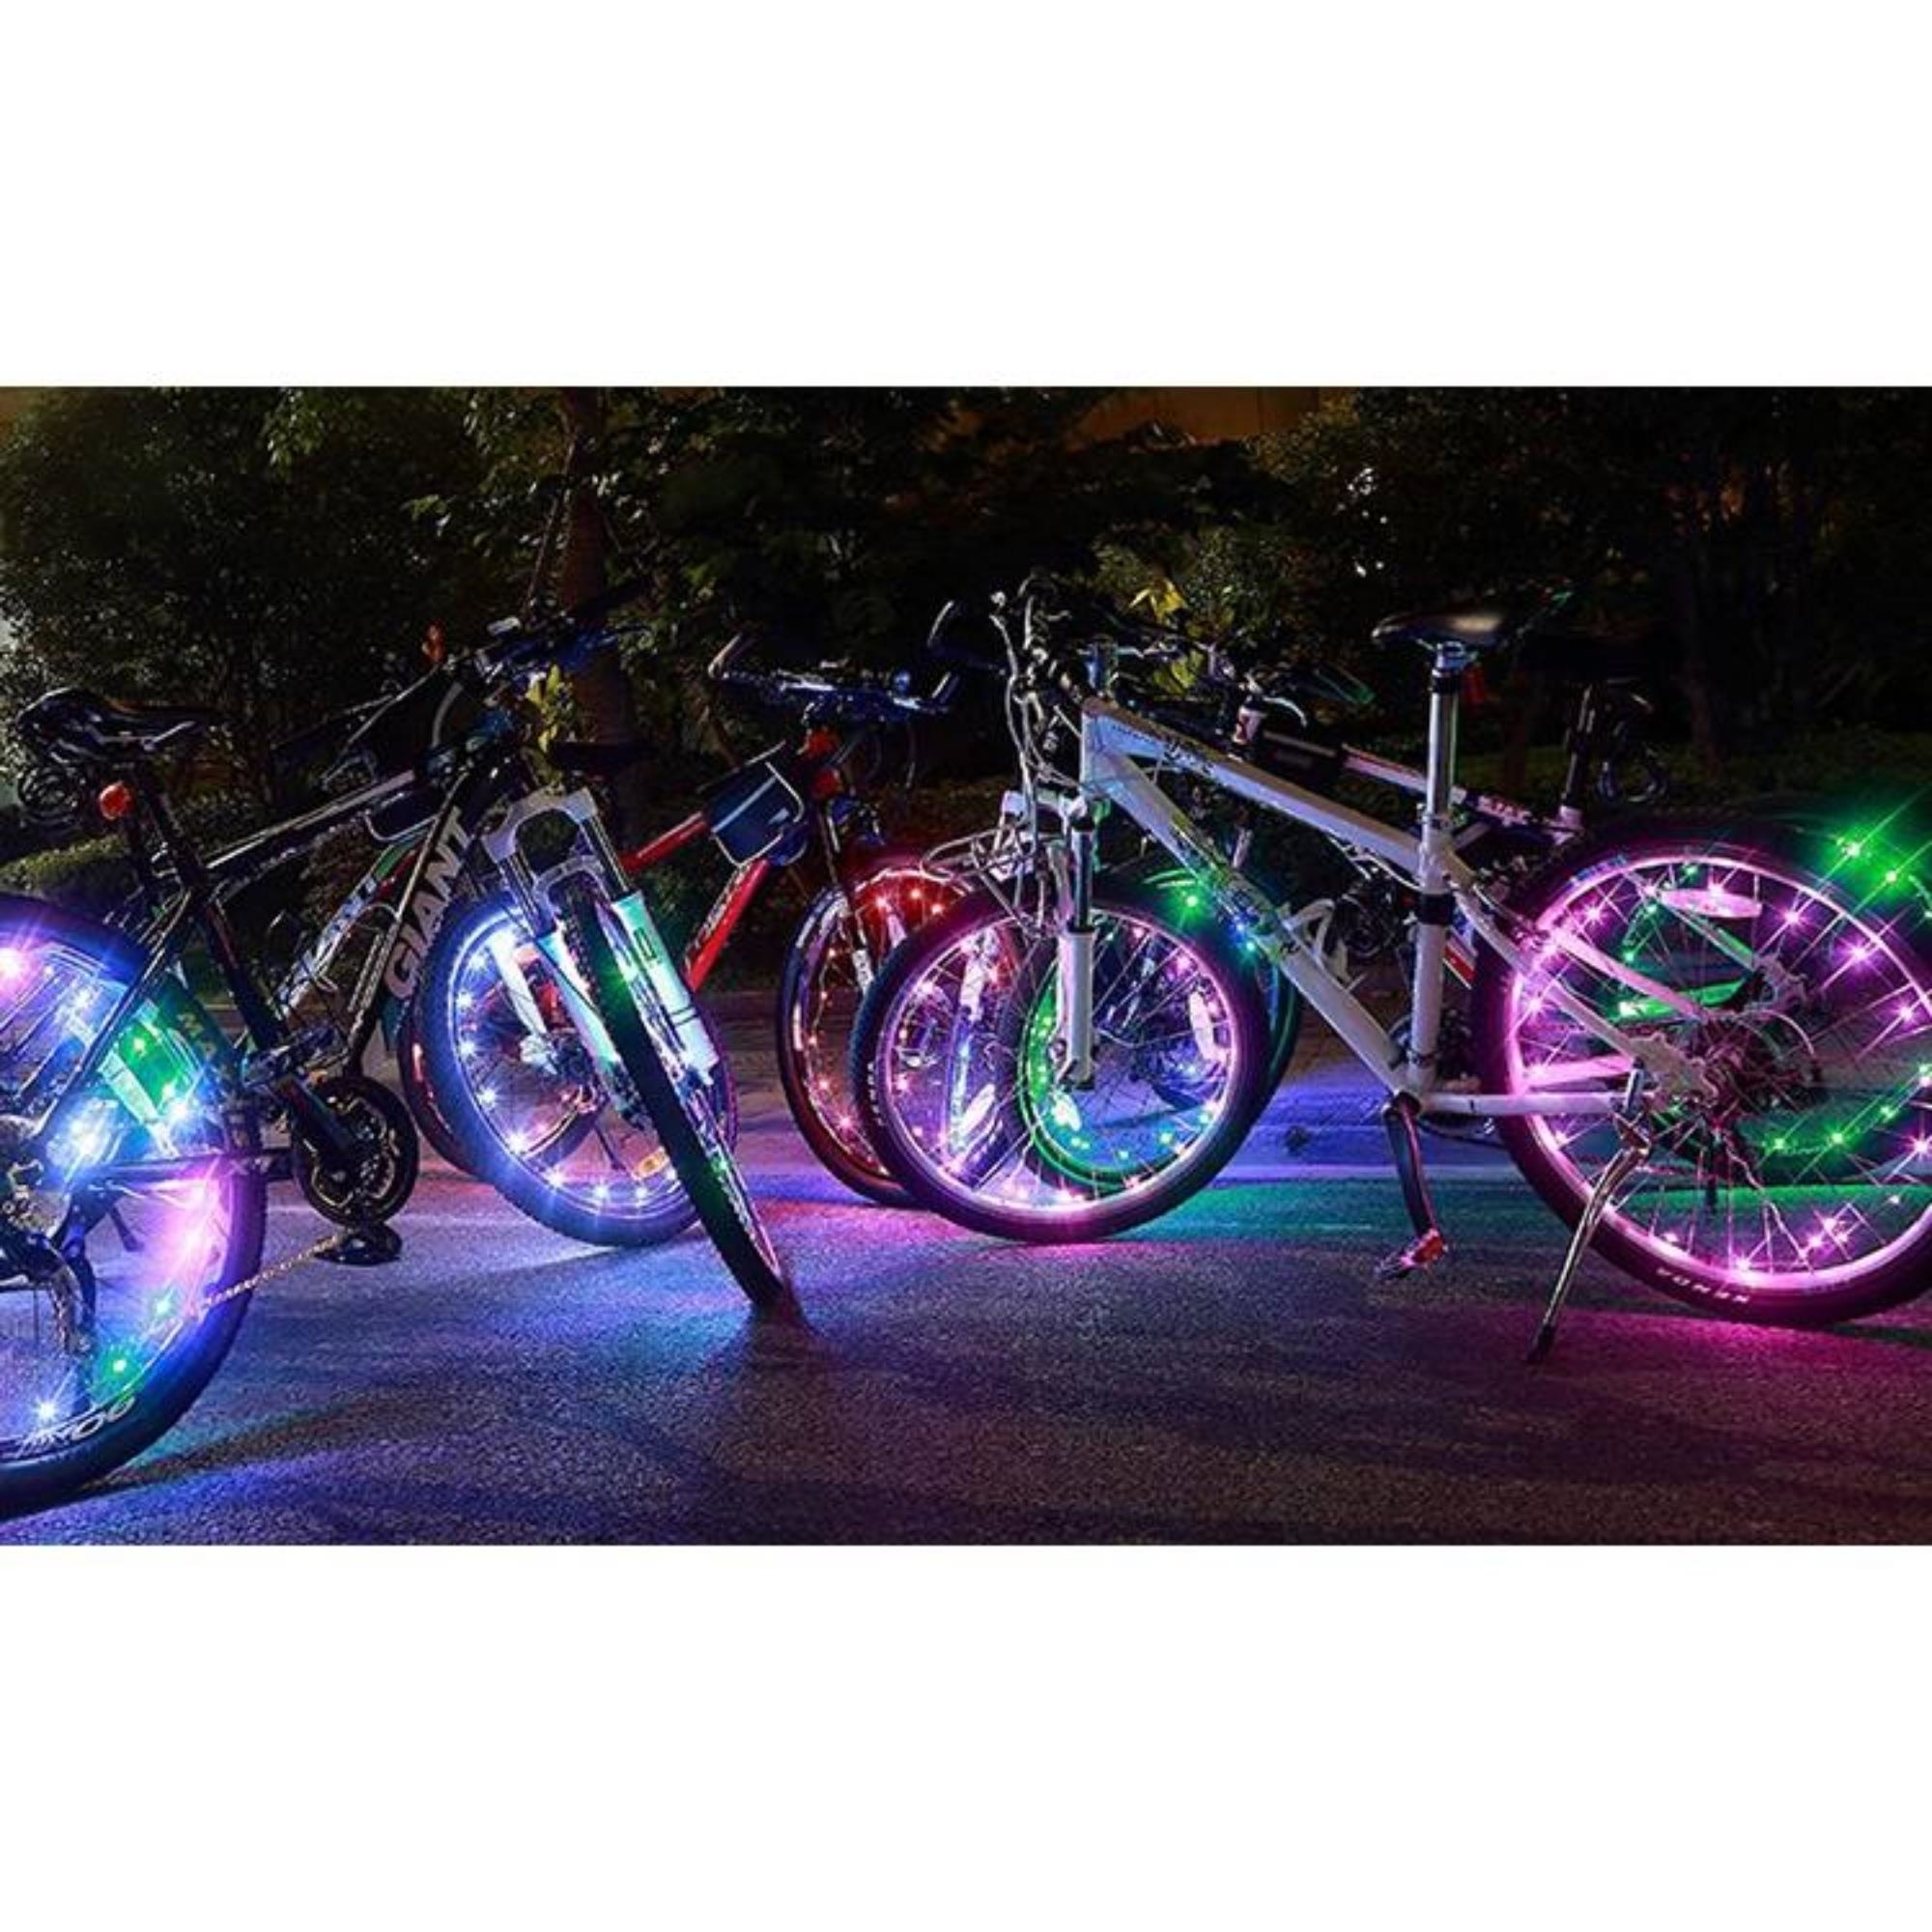 Benson Fietswiel Verlichting Bike Lightning (Inclusief Batterijen) kopen? - 2Cheap